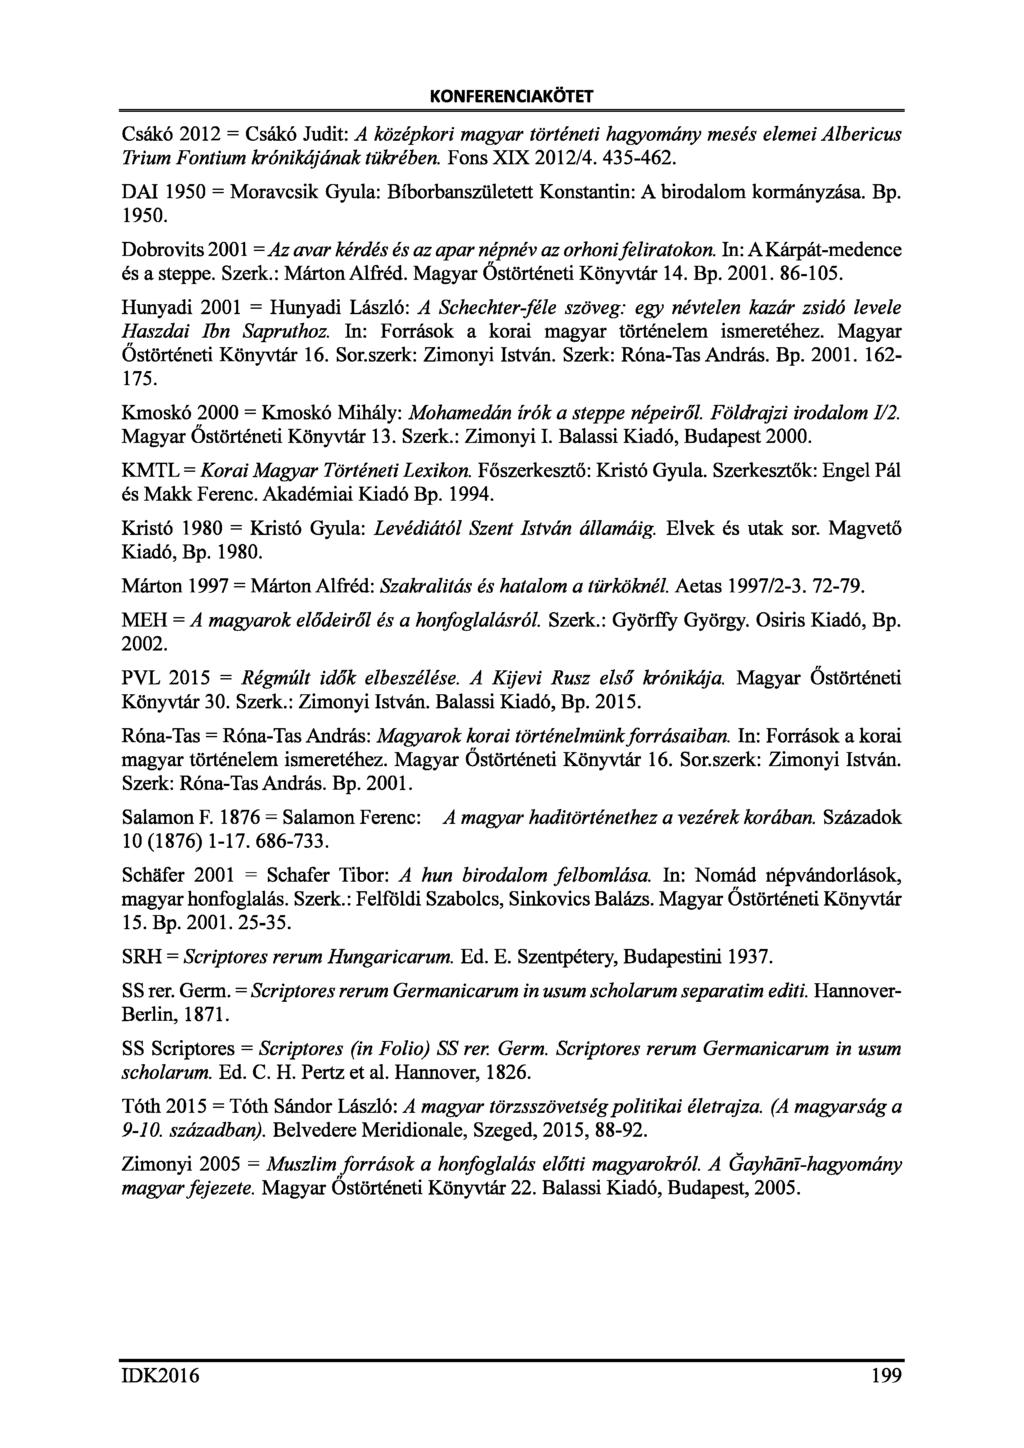 KONFERENCIAKÖTET Csákó 2012 = Csákó Judit: A középkori magyar történeti hagyomány mesés elemei Albericus Trium Fontium krónikájának tükrében. Fons XIX 2012/4. 435-462.